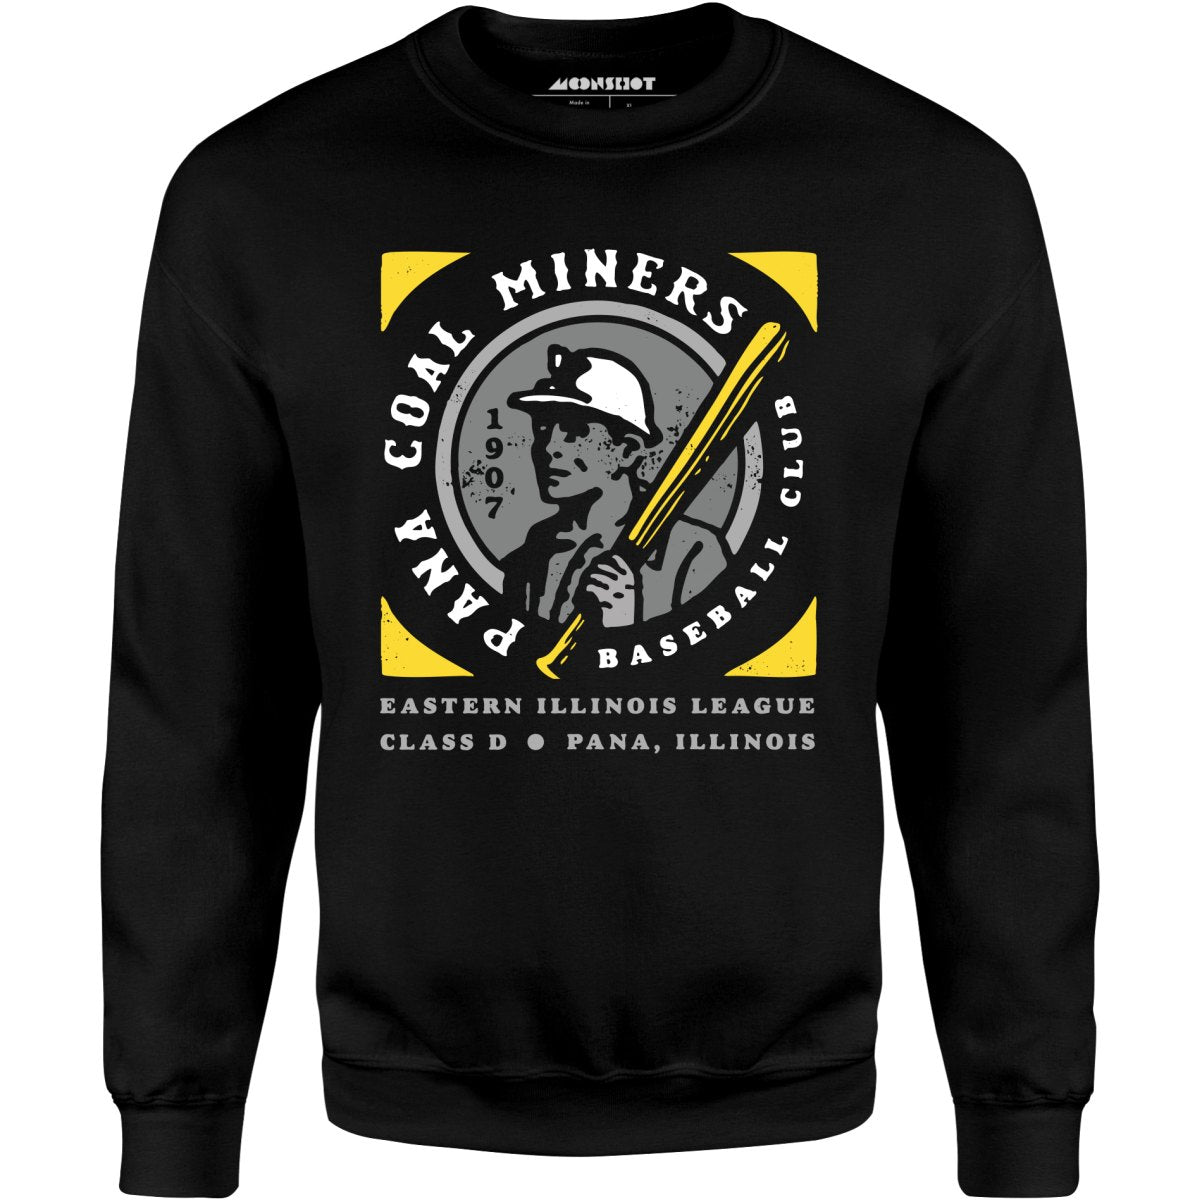 Pana Coal Miners - Illinois - Vintage Defunct Baseball Teams - Unisex Sweatshirt